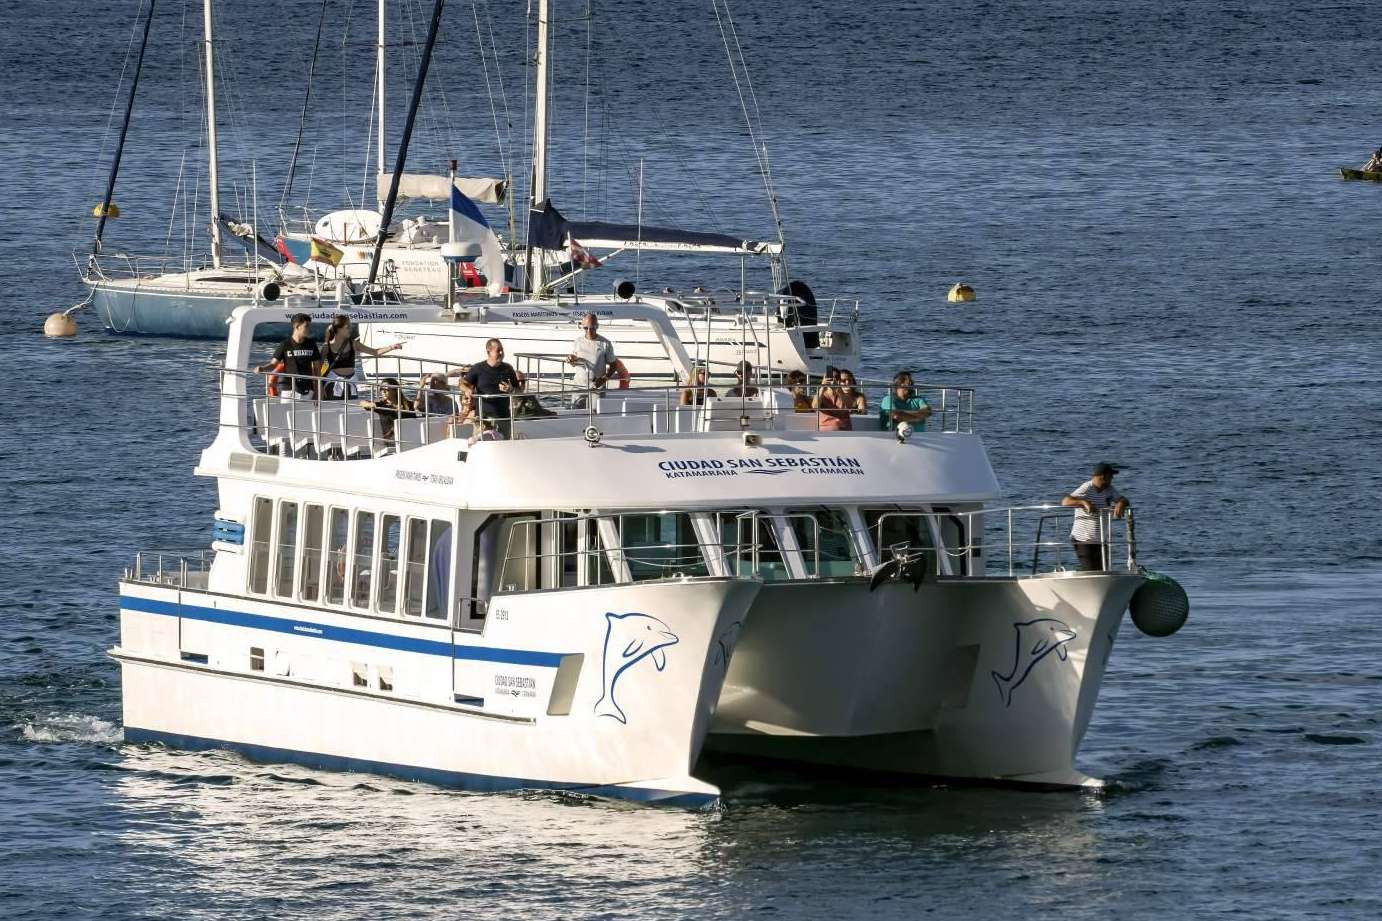  Disfrutar de un paseo en barco sin emisiones, gracias a la alianza entre Catamarán Ciudad San Sebastián y Finanzauto 